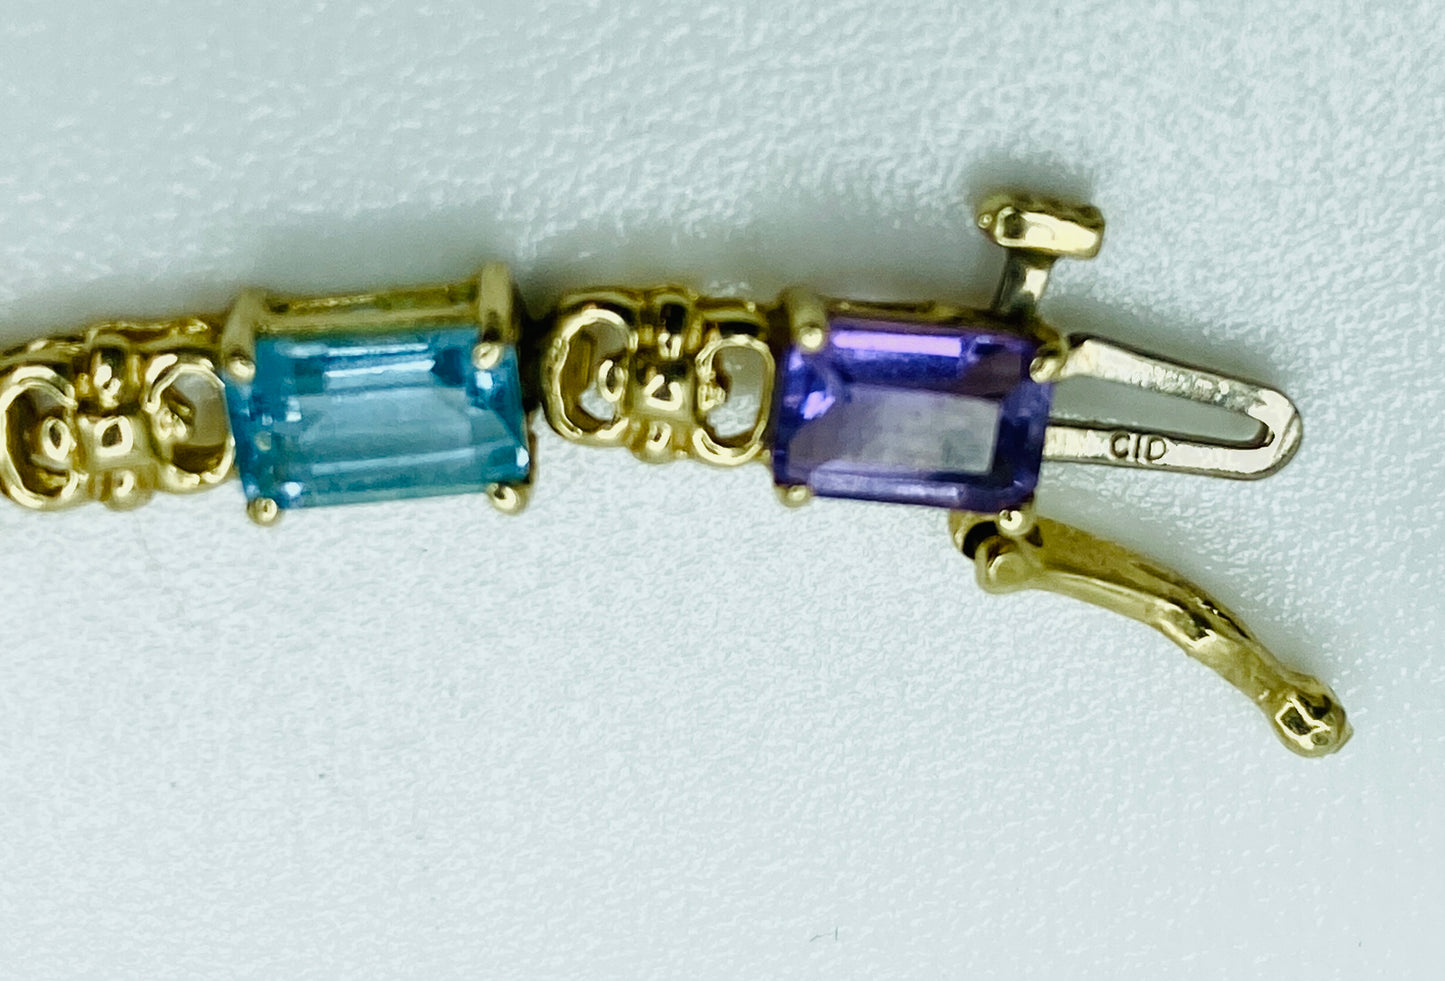 14K Multi-Color Gemstone Bracelet